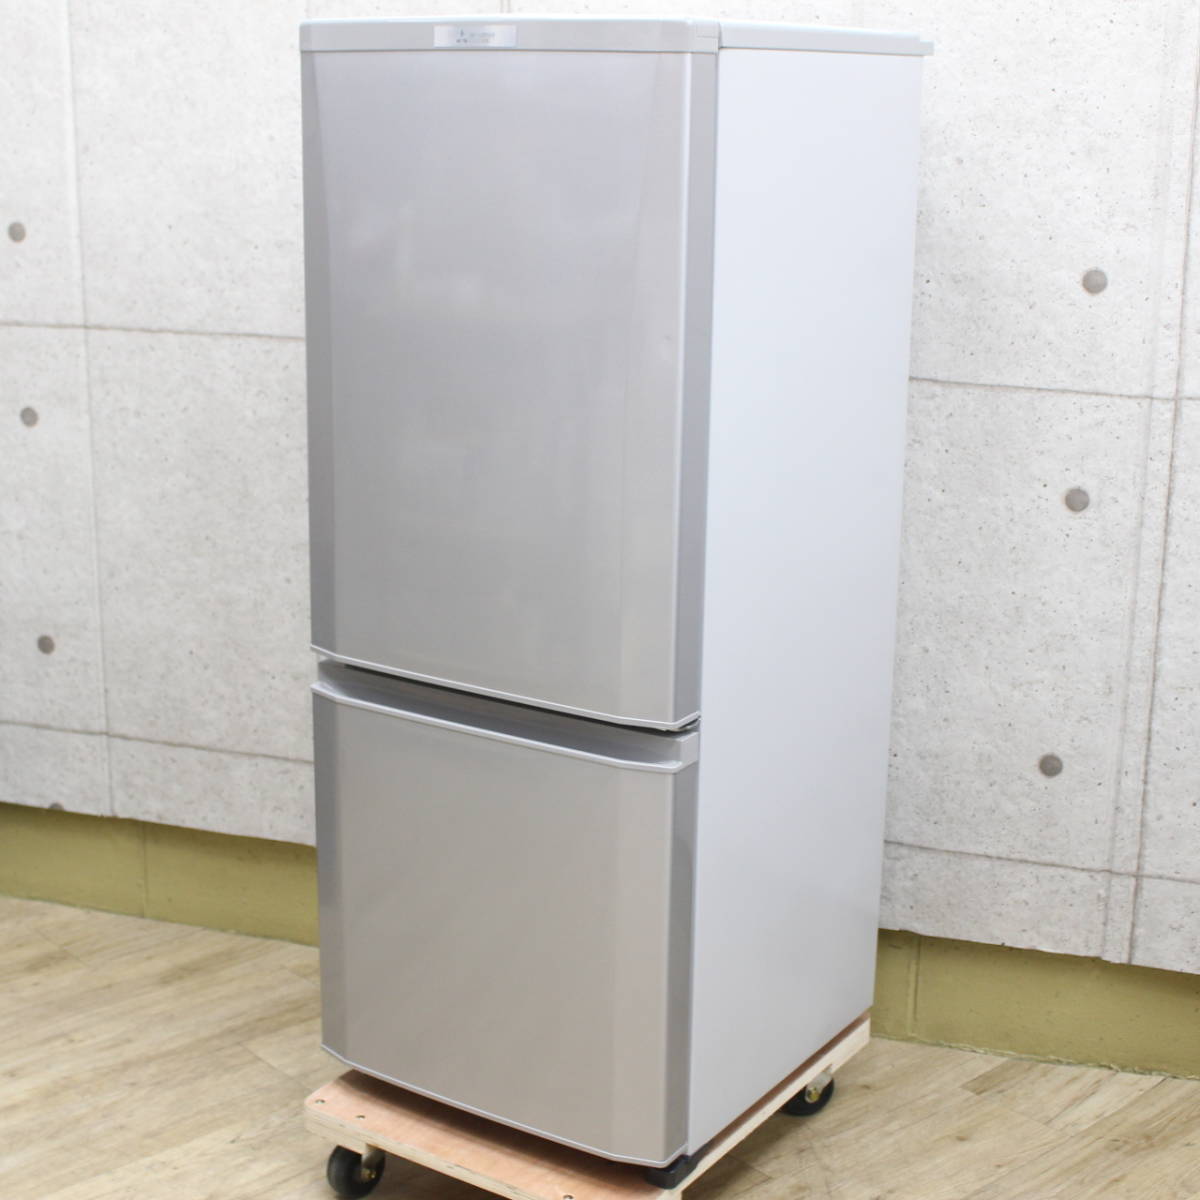 三菱 MITSUBISHI 2ドア冷凍冷蔵庫 MR-P15C-S 146L 2018年製 - 川崎市・横浜市で家具・家電の買取リサイクル